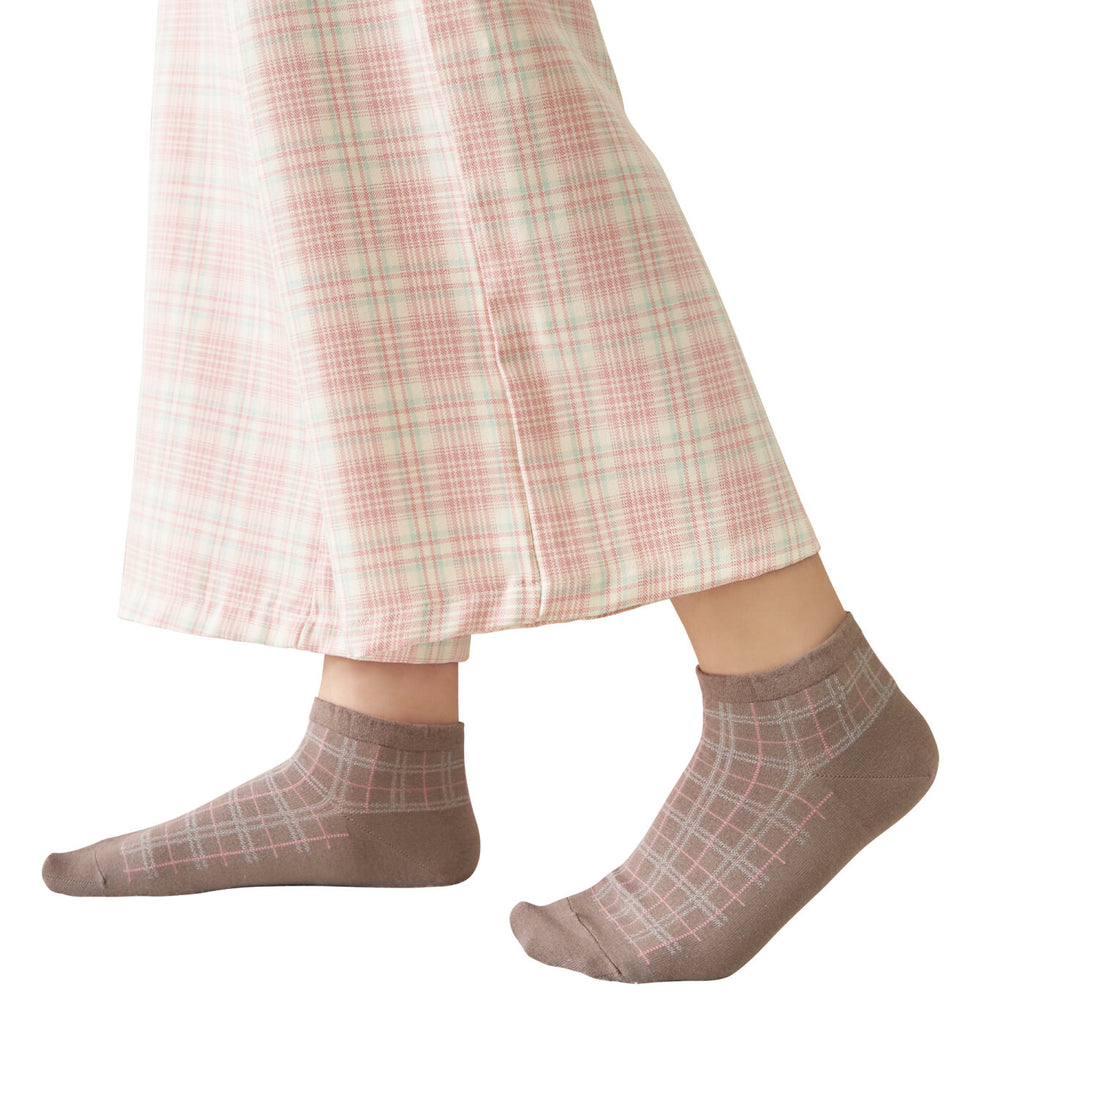 ถุงเท้าข้อสั้น Premium Cotton Socks Selected by Wacoal รุ่น WW110300 สีโอวัลติน (OT)